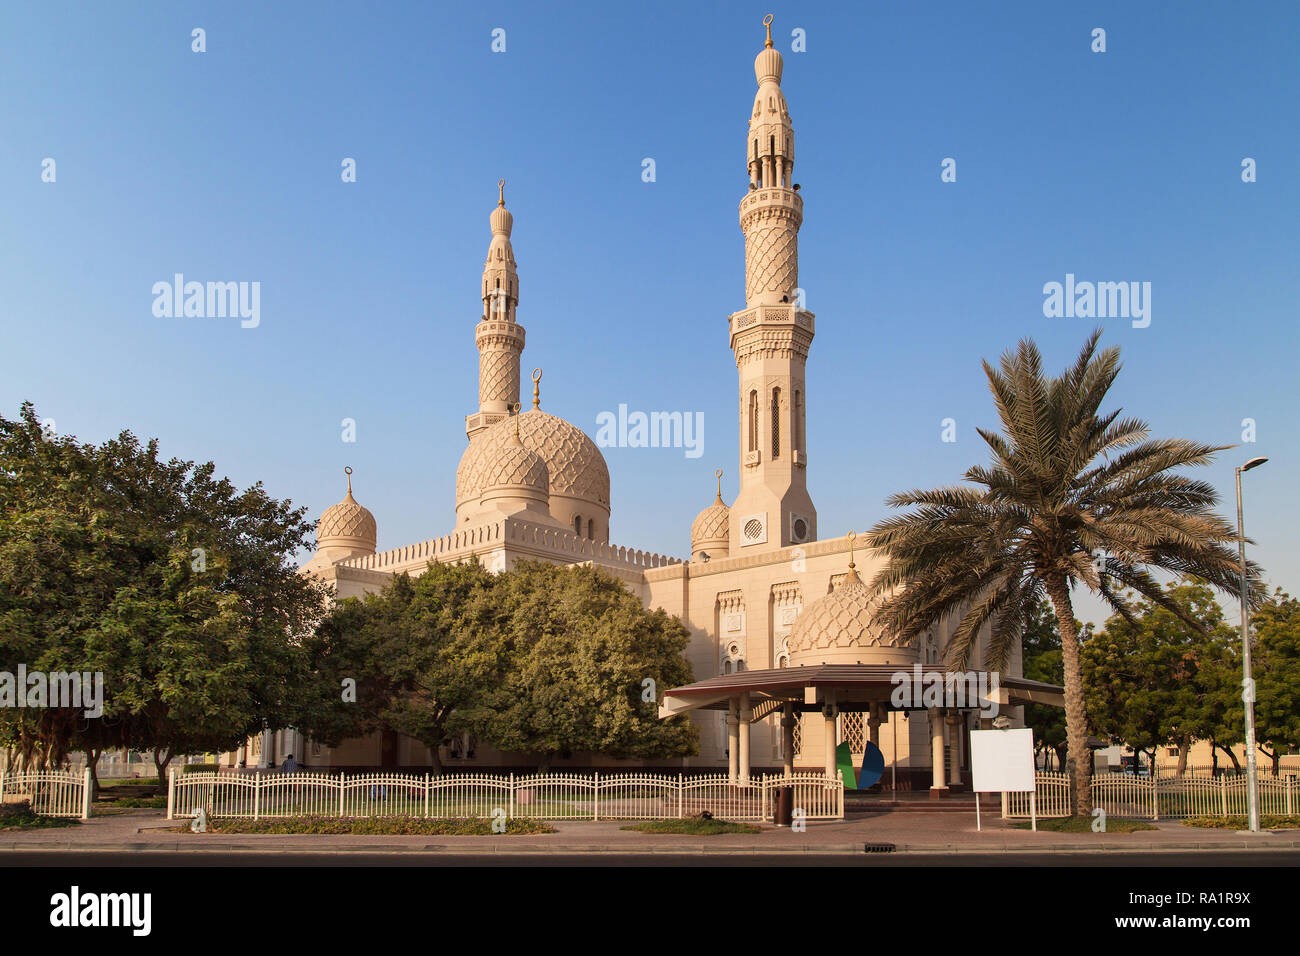 Jumeirah Mosque in Dubai, United Arab Emirates. Stock Photo